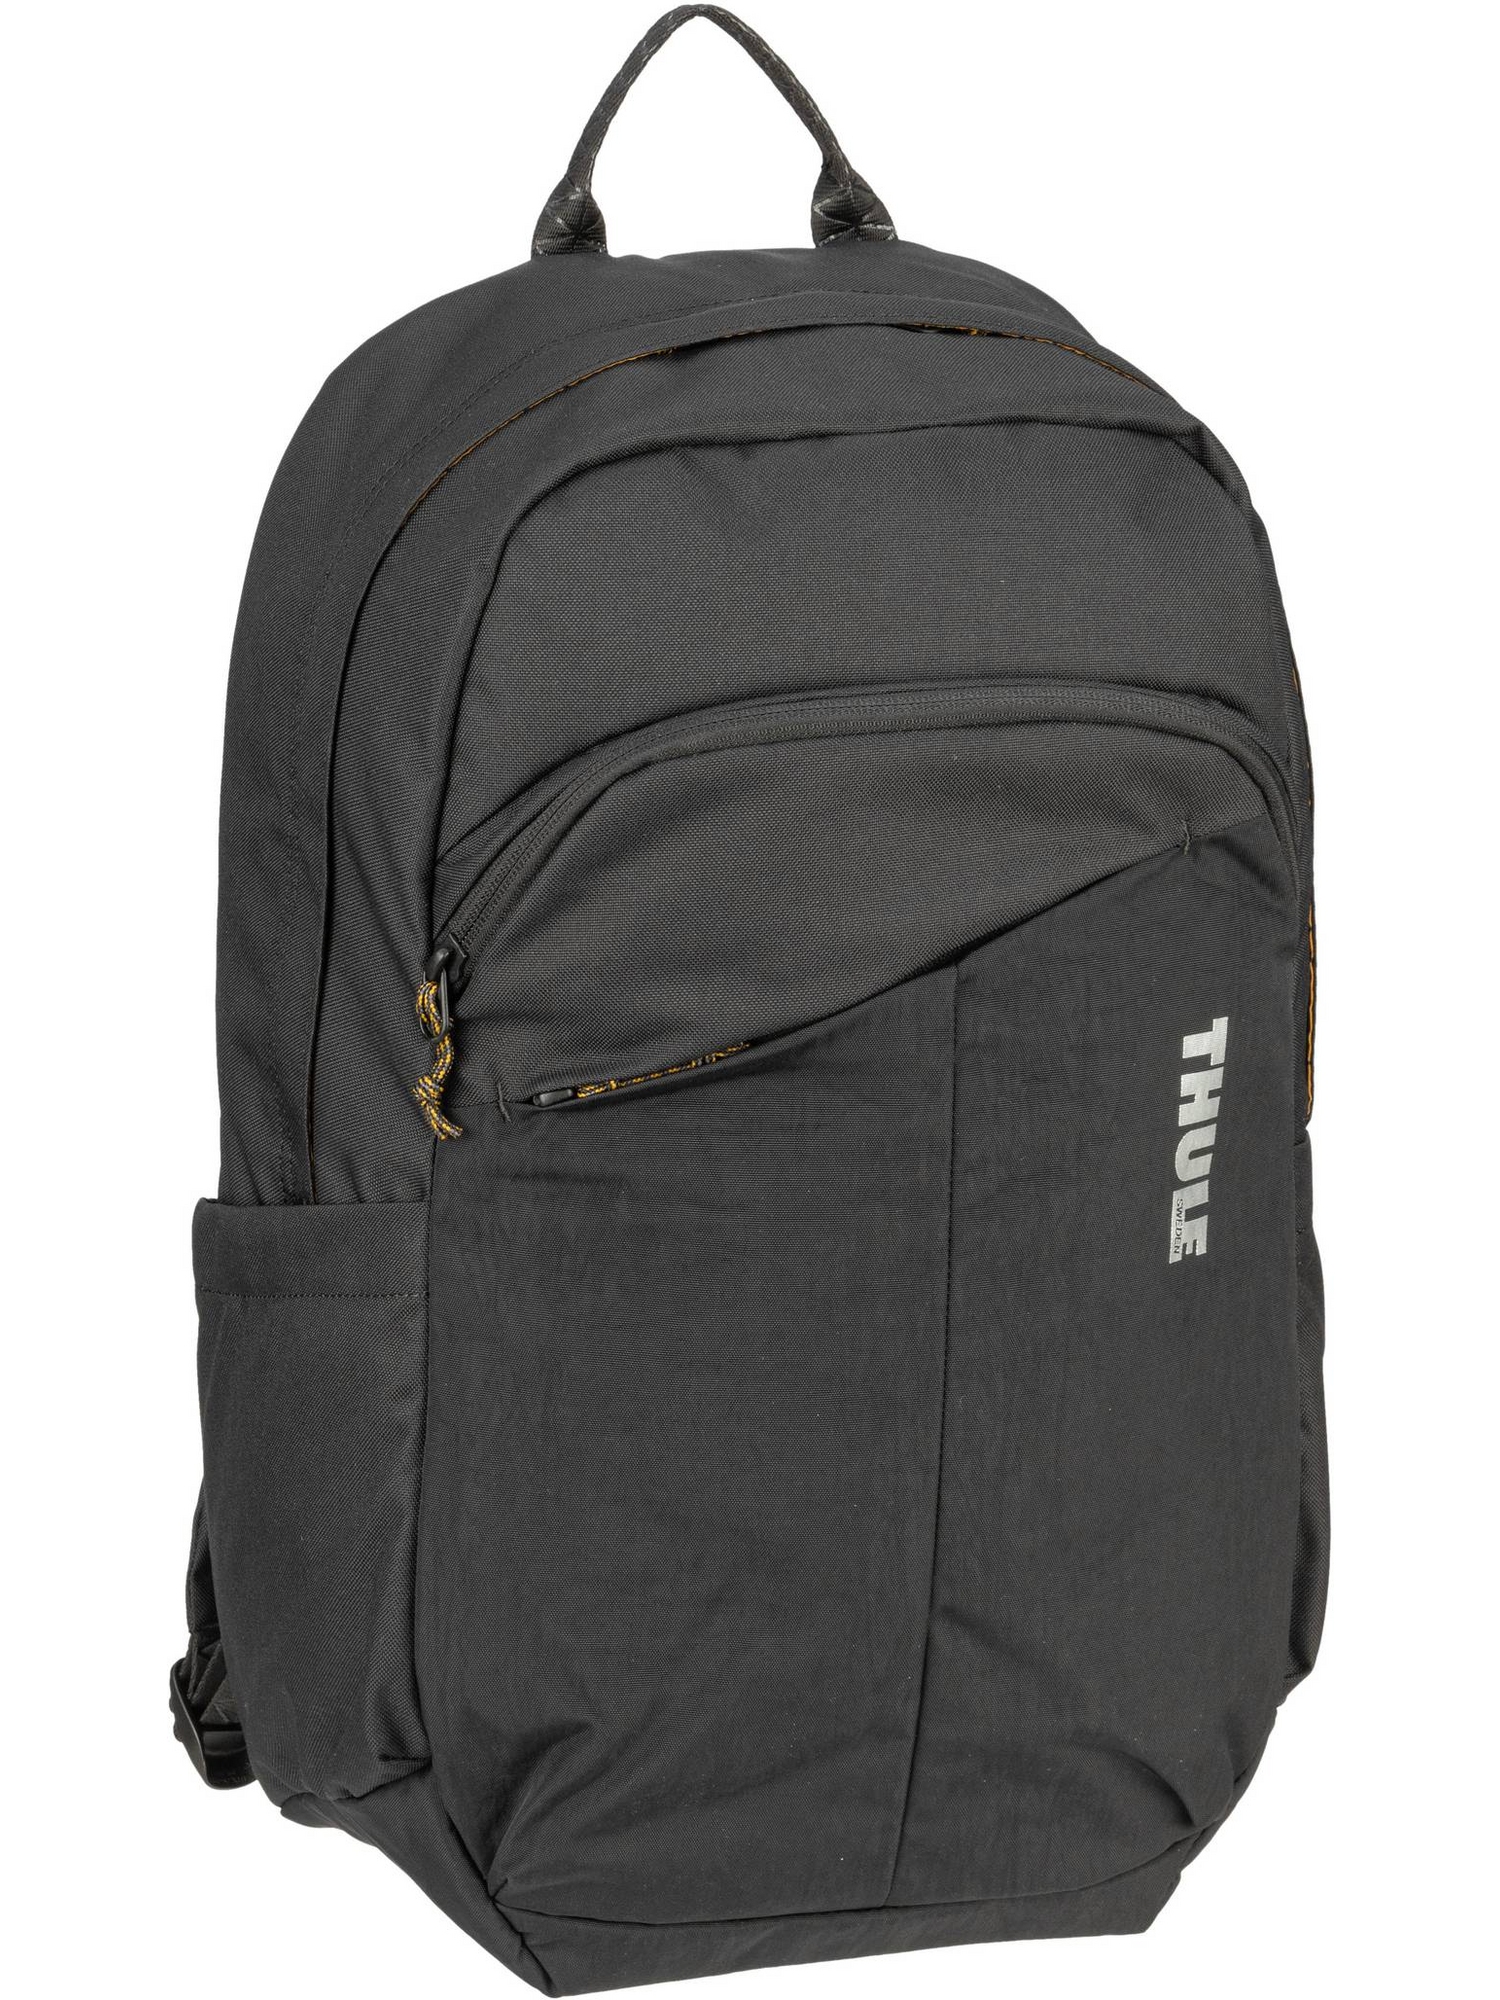 Рюкзак Thule/Backpack Indago Backpack 23L, черный рюкзак thule backpack indago backpack 23l цвет new maroon